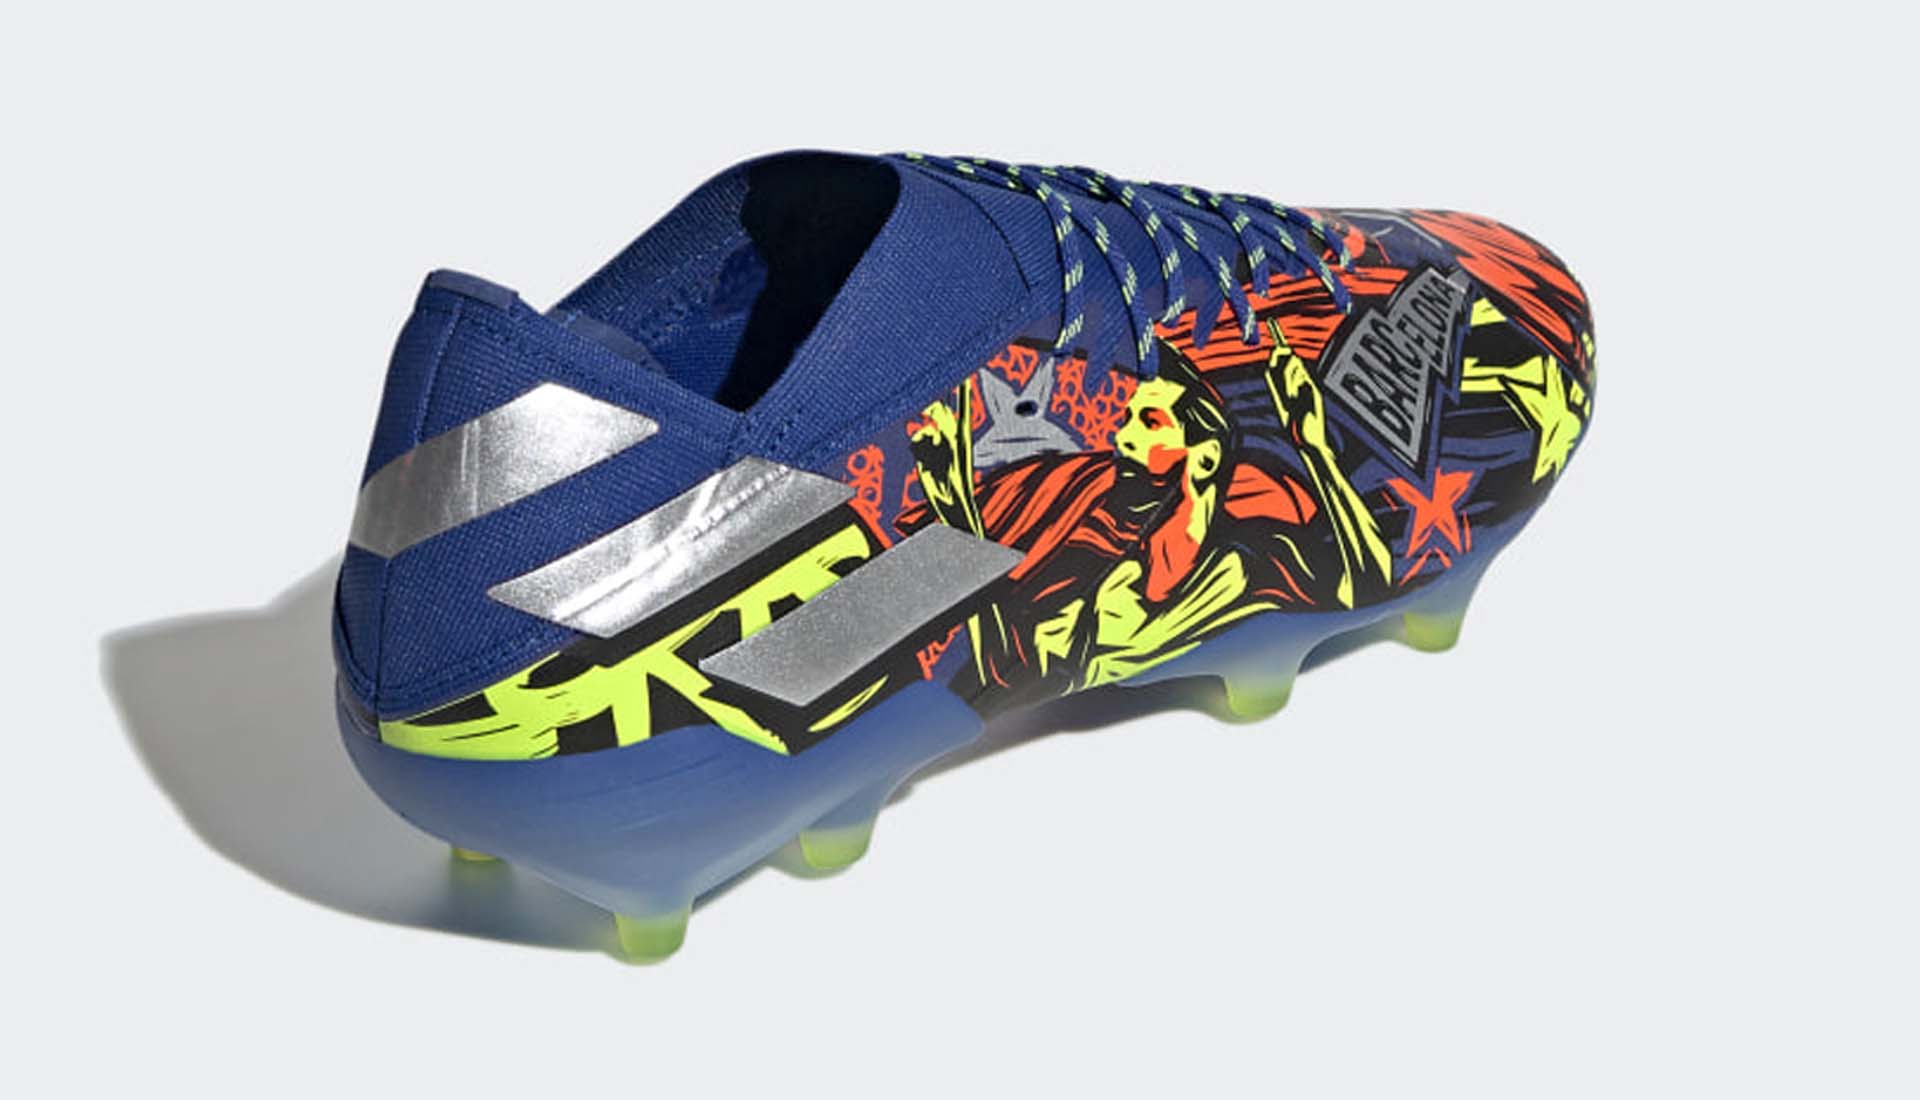 Thiết kế đẹp mắt của giày bóng đá Adidas Nemeziz Messi Barcelona